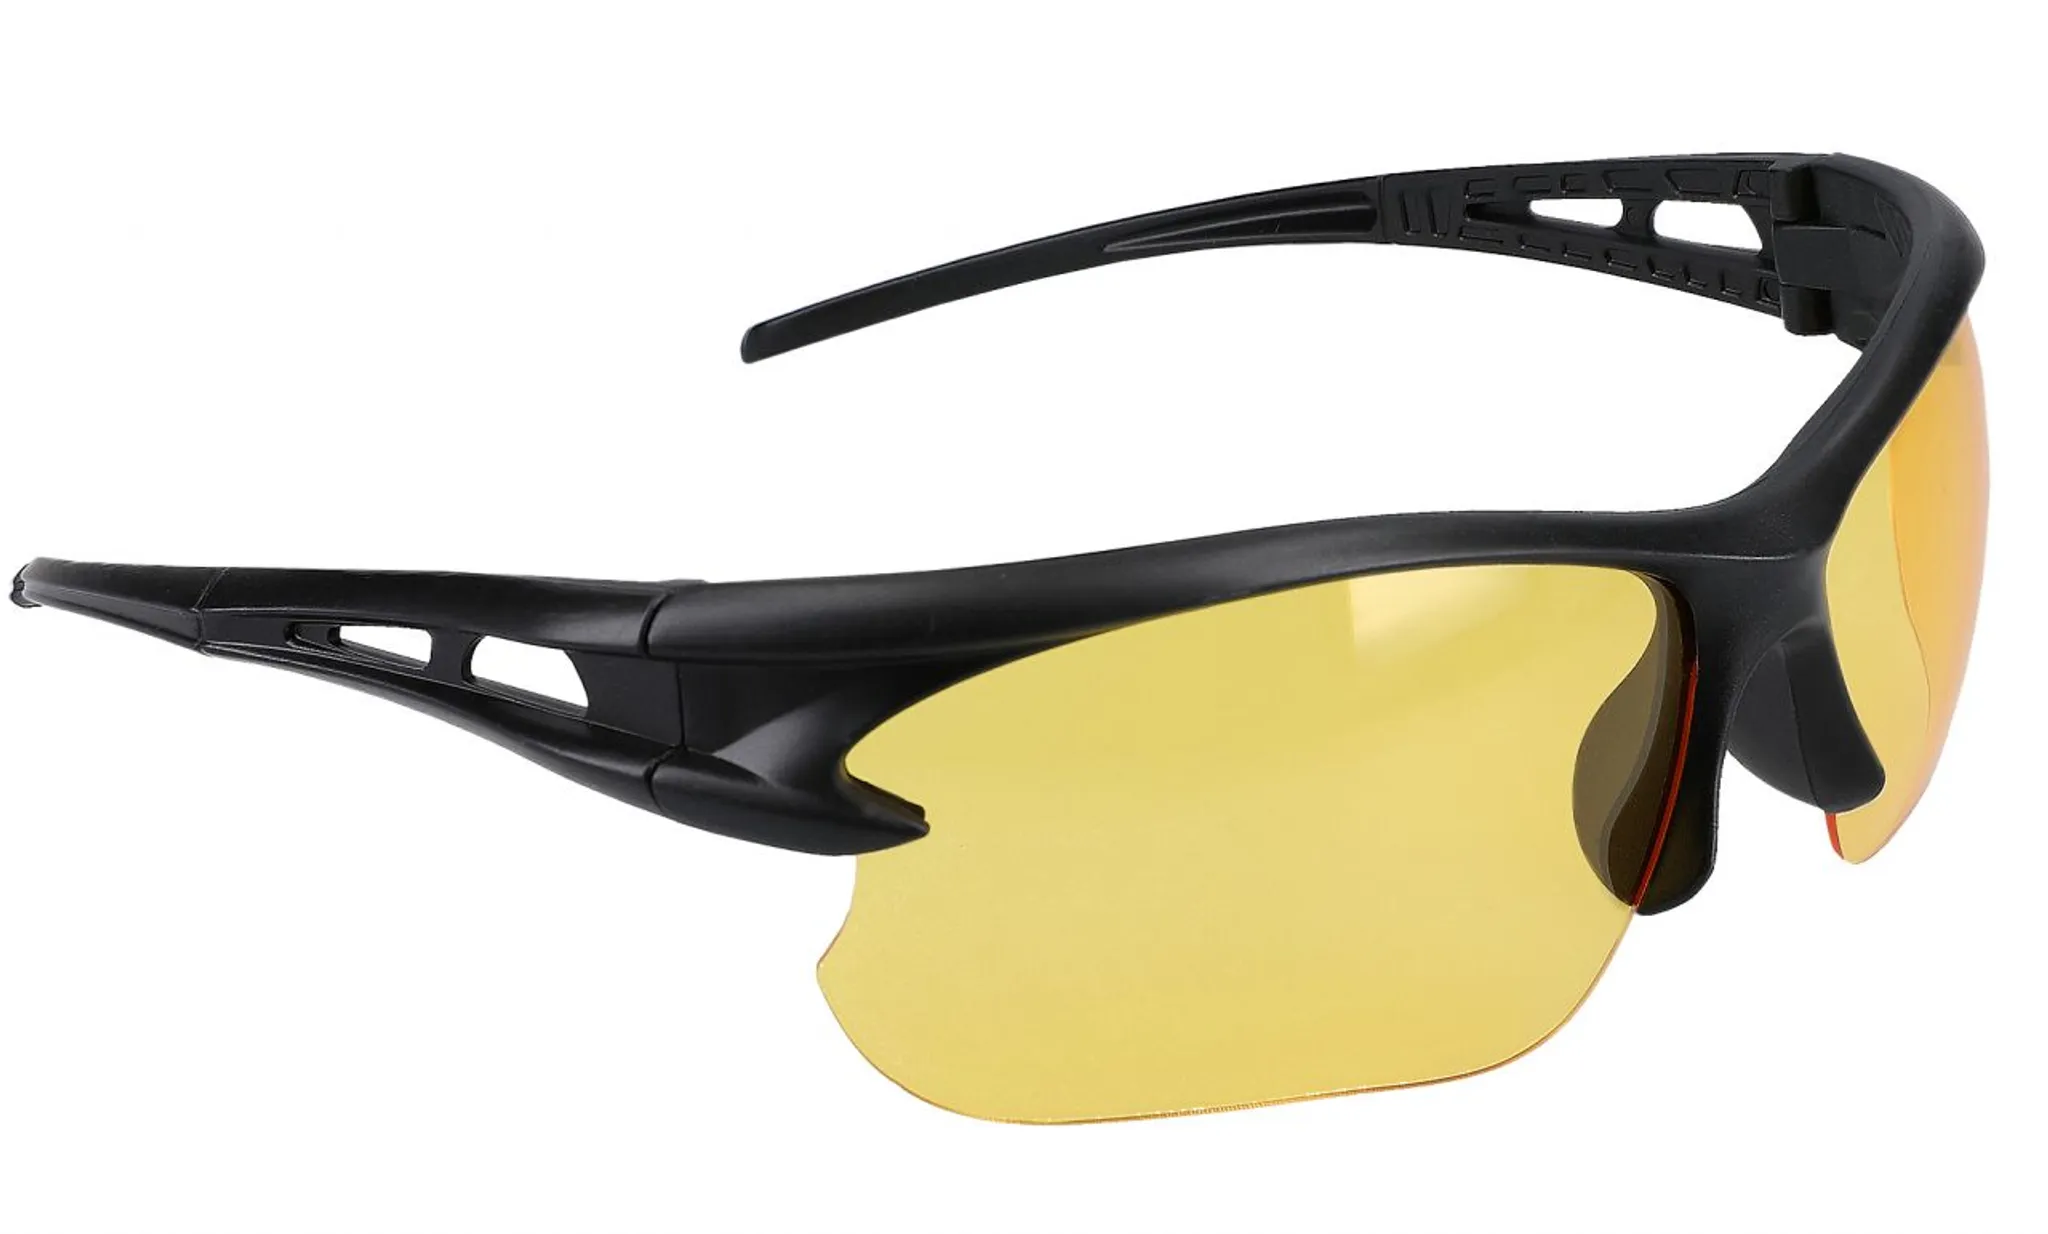 Blendschutz Nachtsichtbrille Schutzausrüstung Sonnenbrille Fahrbrille Nachtsichtbrille C 